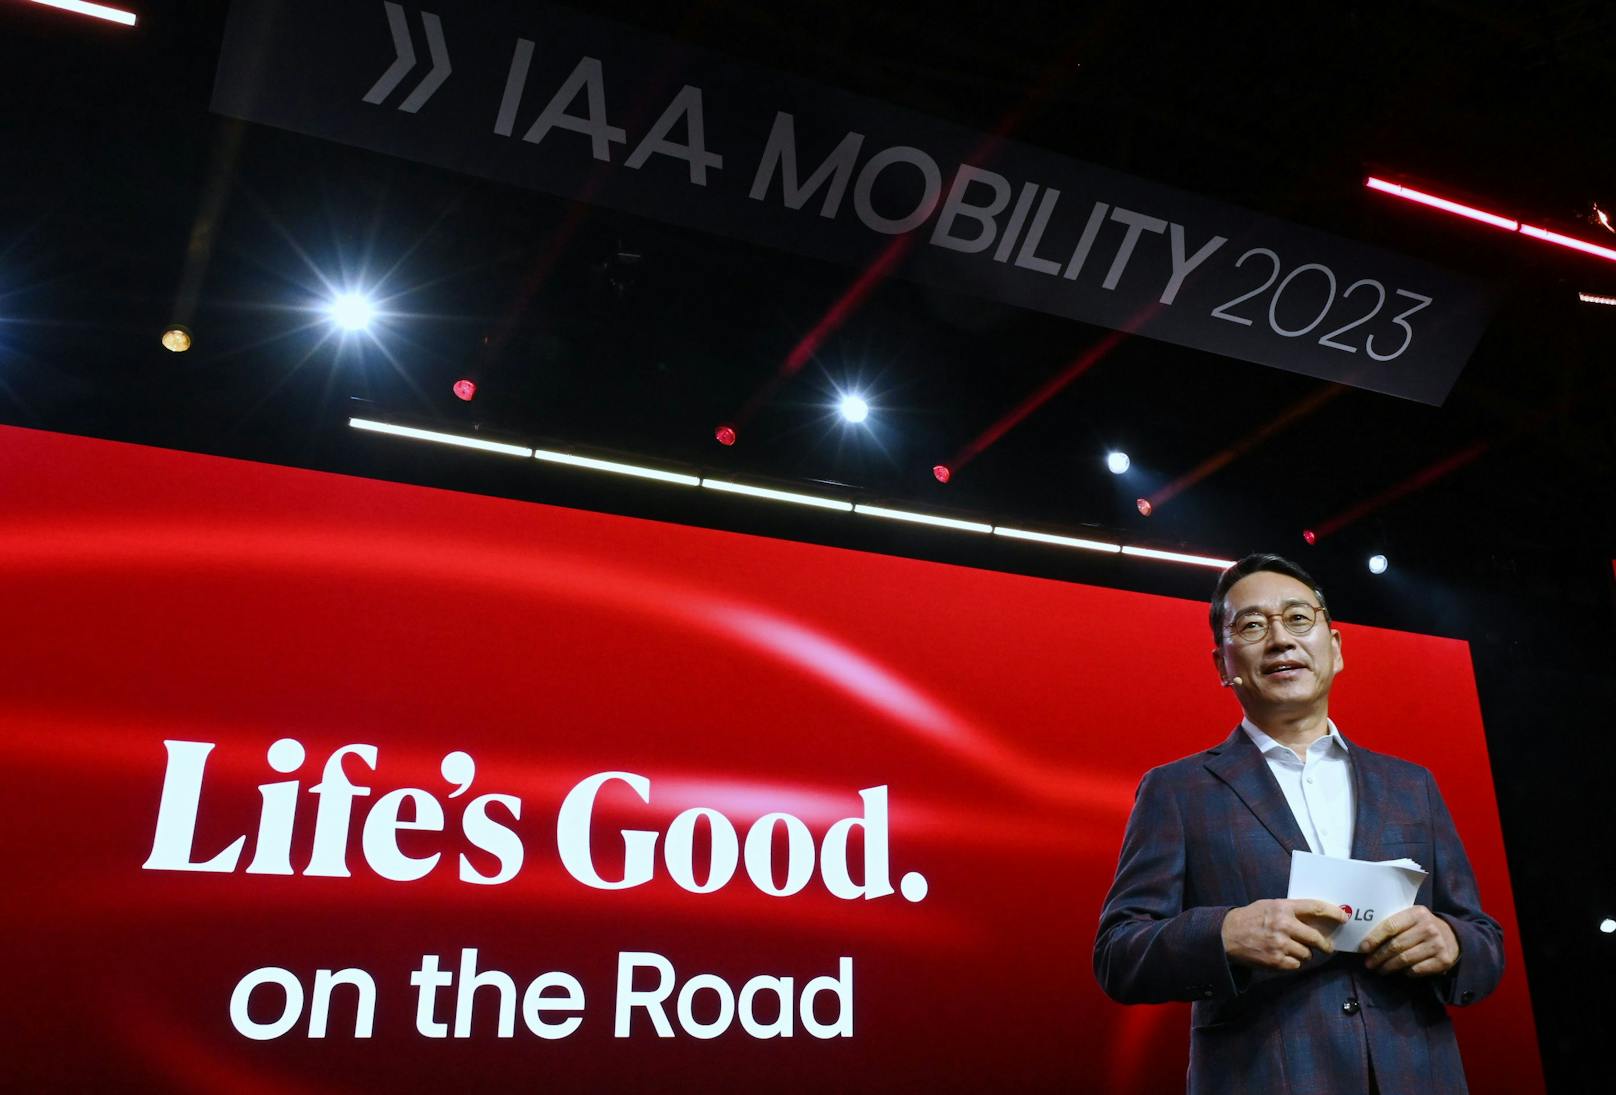 IAA MOBILITY 2023: LG CEO präsentiert Vision von Fahrerlebnissen für die zukünftige Mobilität.